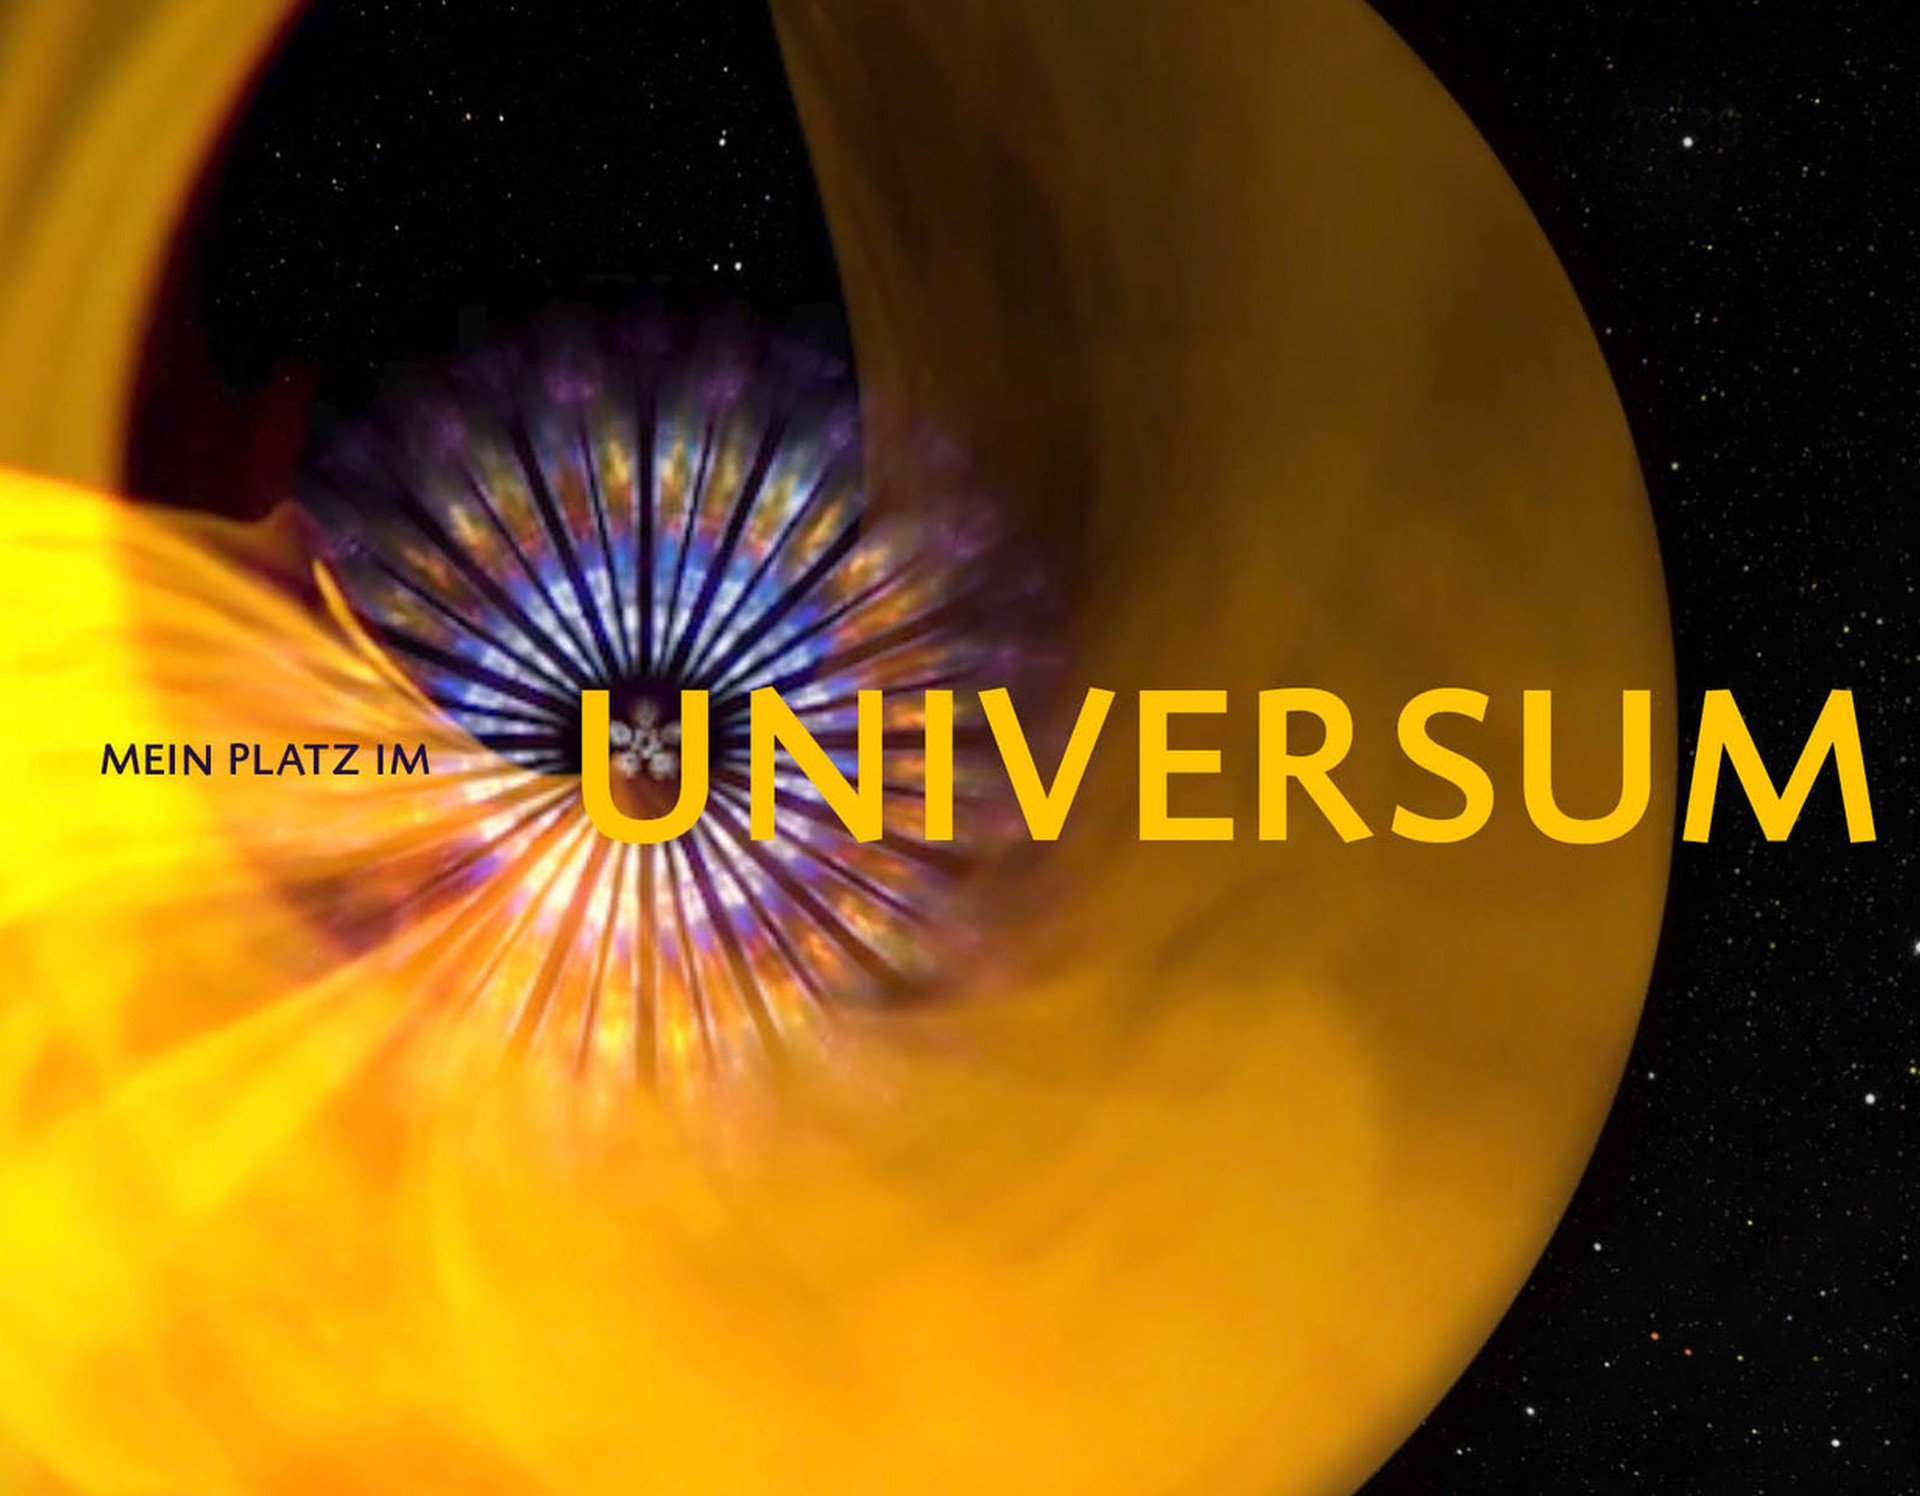 Gelbe, blumenähnliche Grafik mit Schriftzug "Mein Platz im Universum".